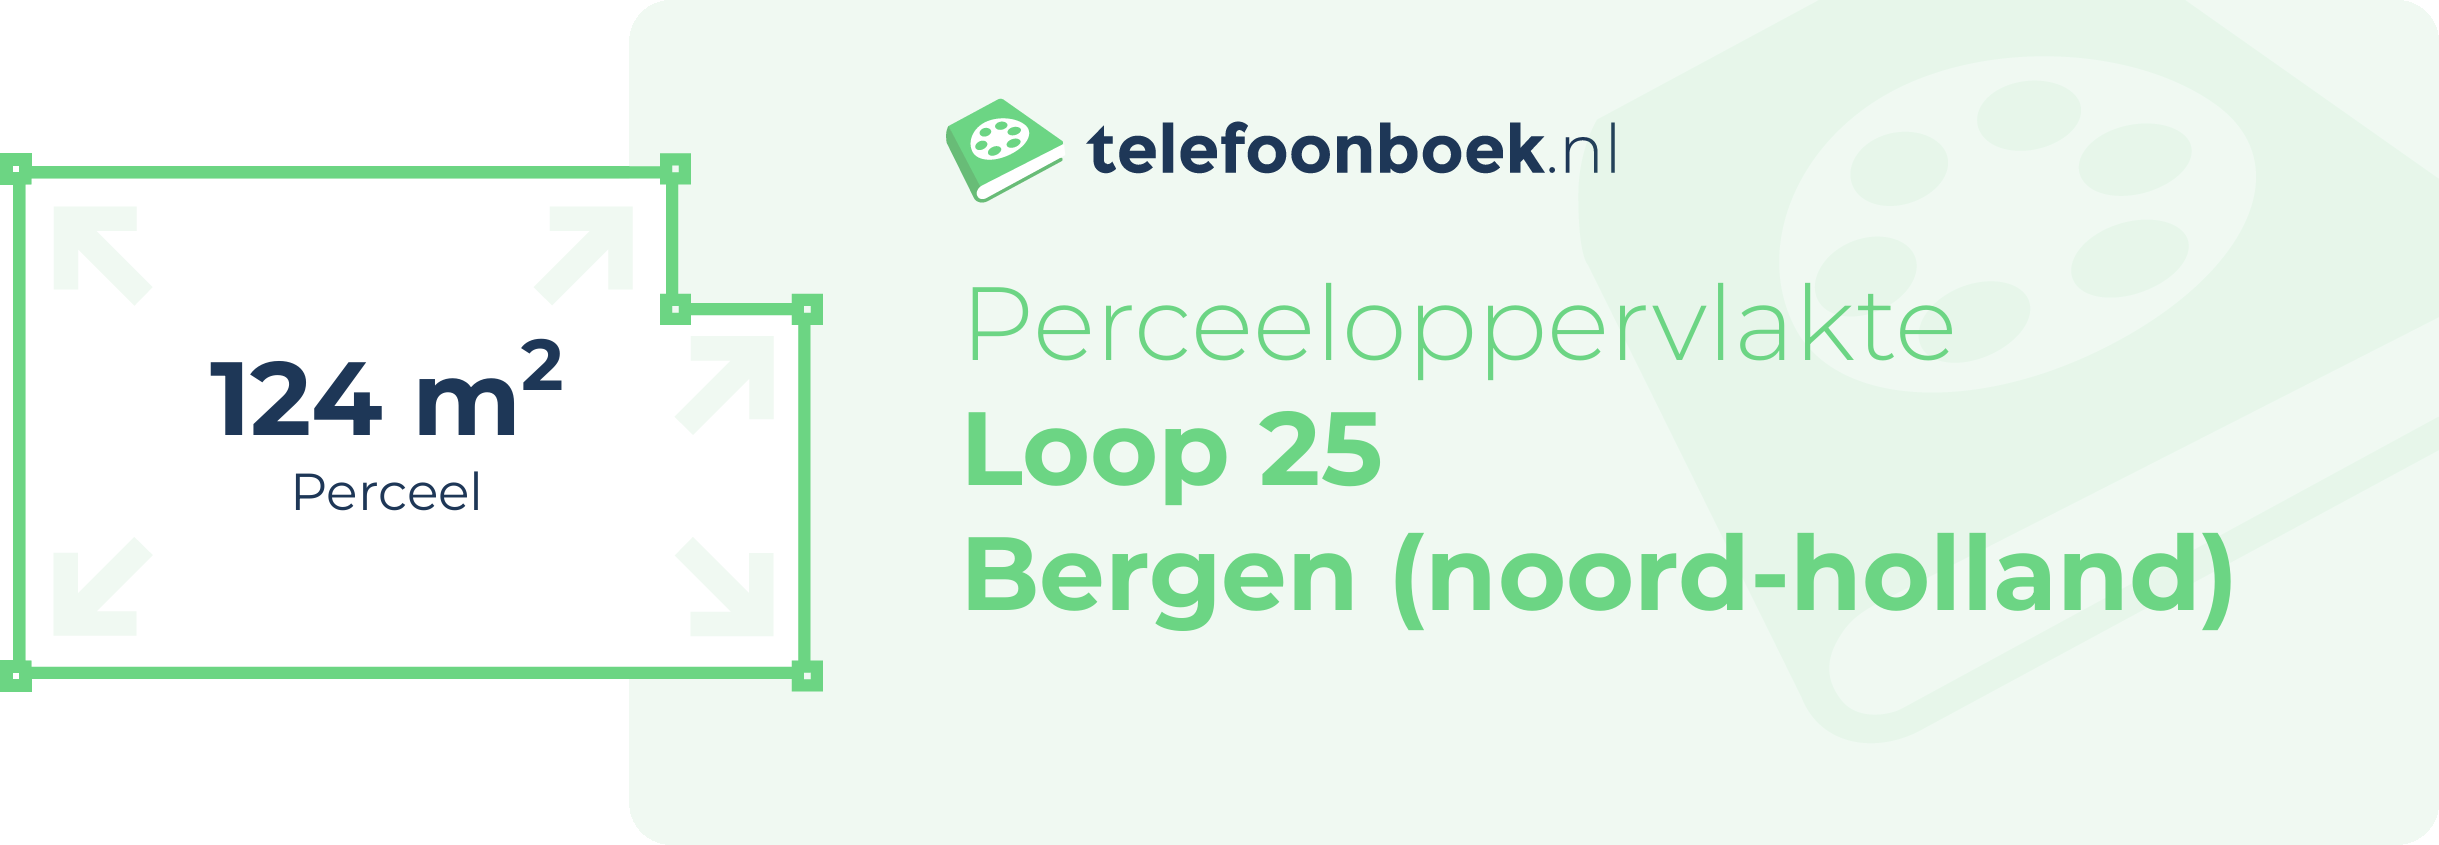 Perceeloppervlakte Loop 25 Bergen (Noord-Holland)